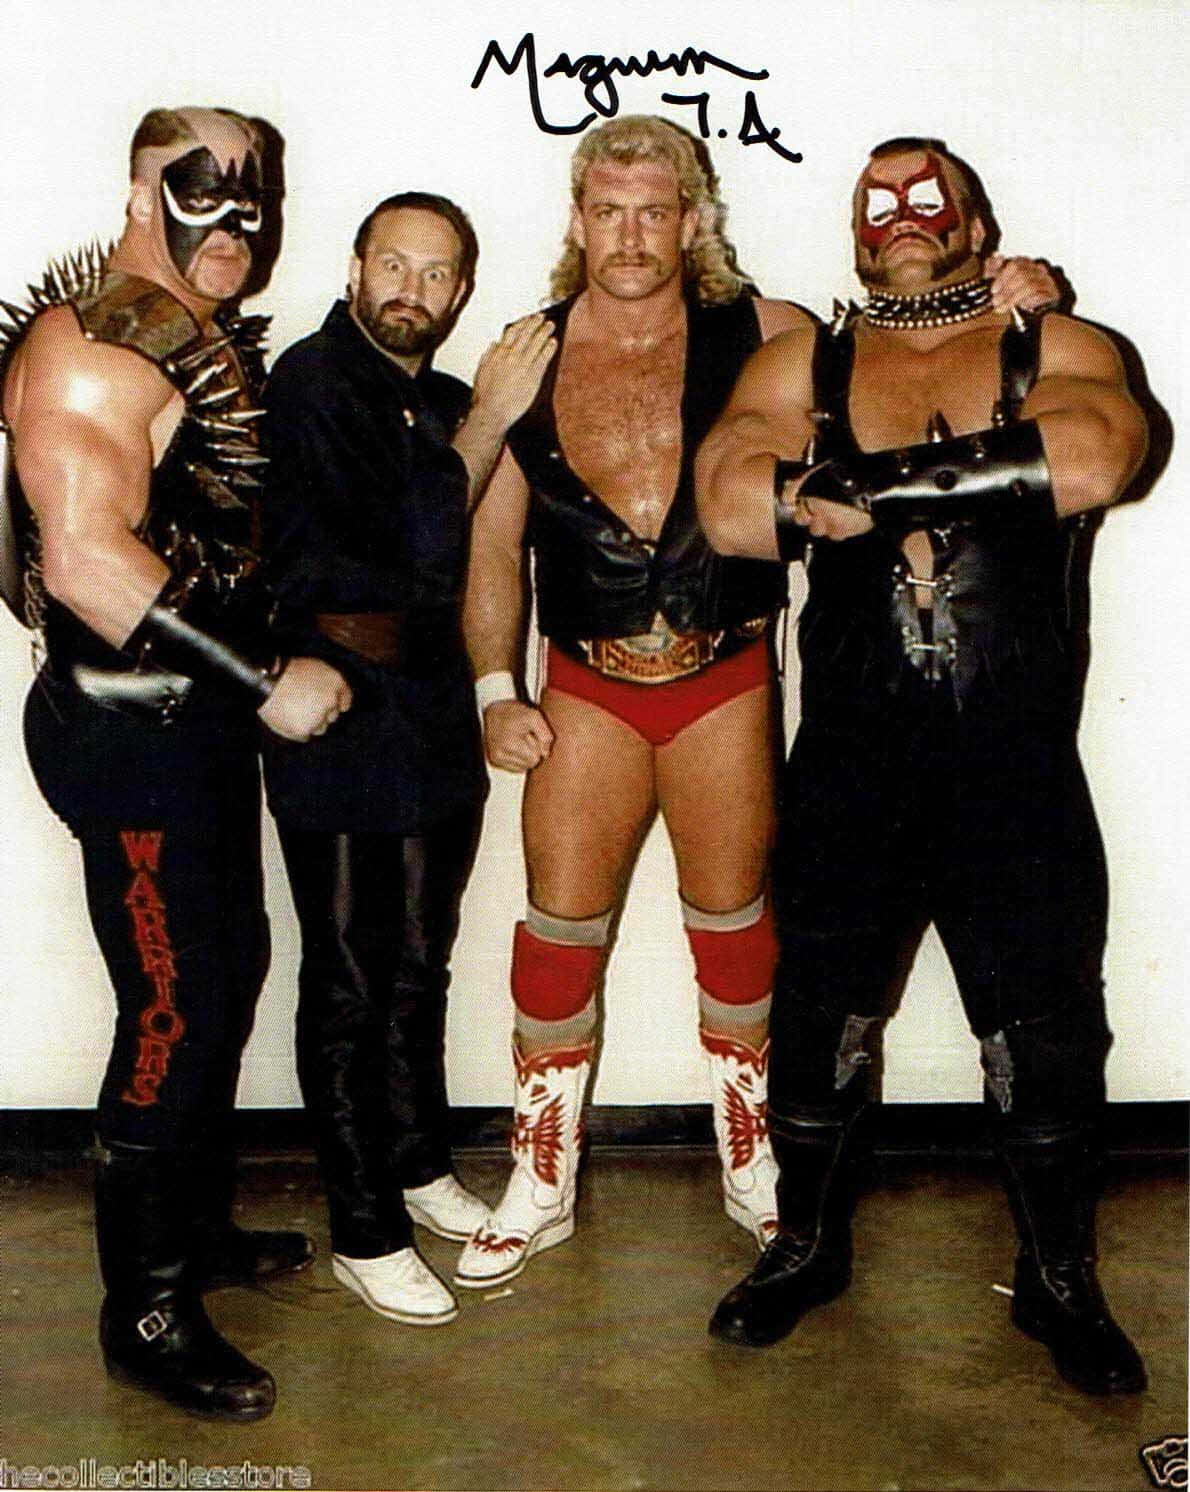 Amerikansk Wrestler Magnum TA og The Road Warriors underskrevet portræt. Wallpaper